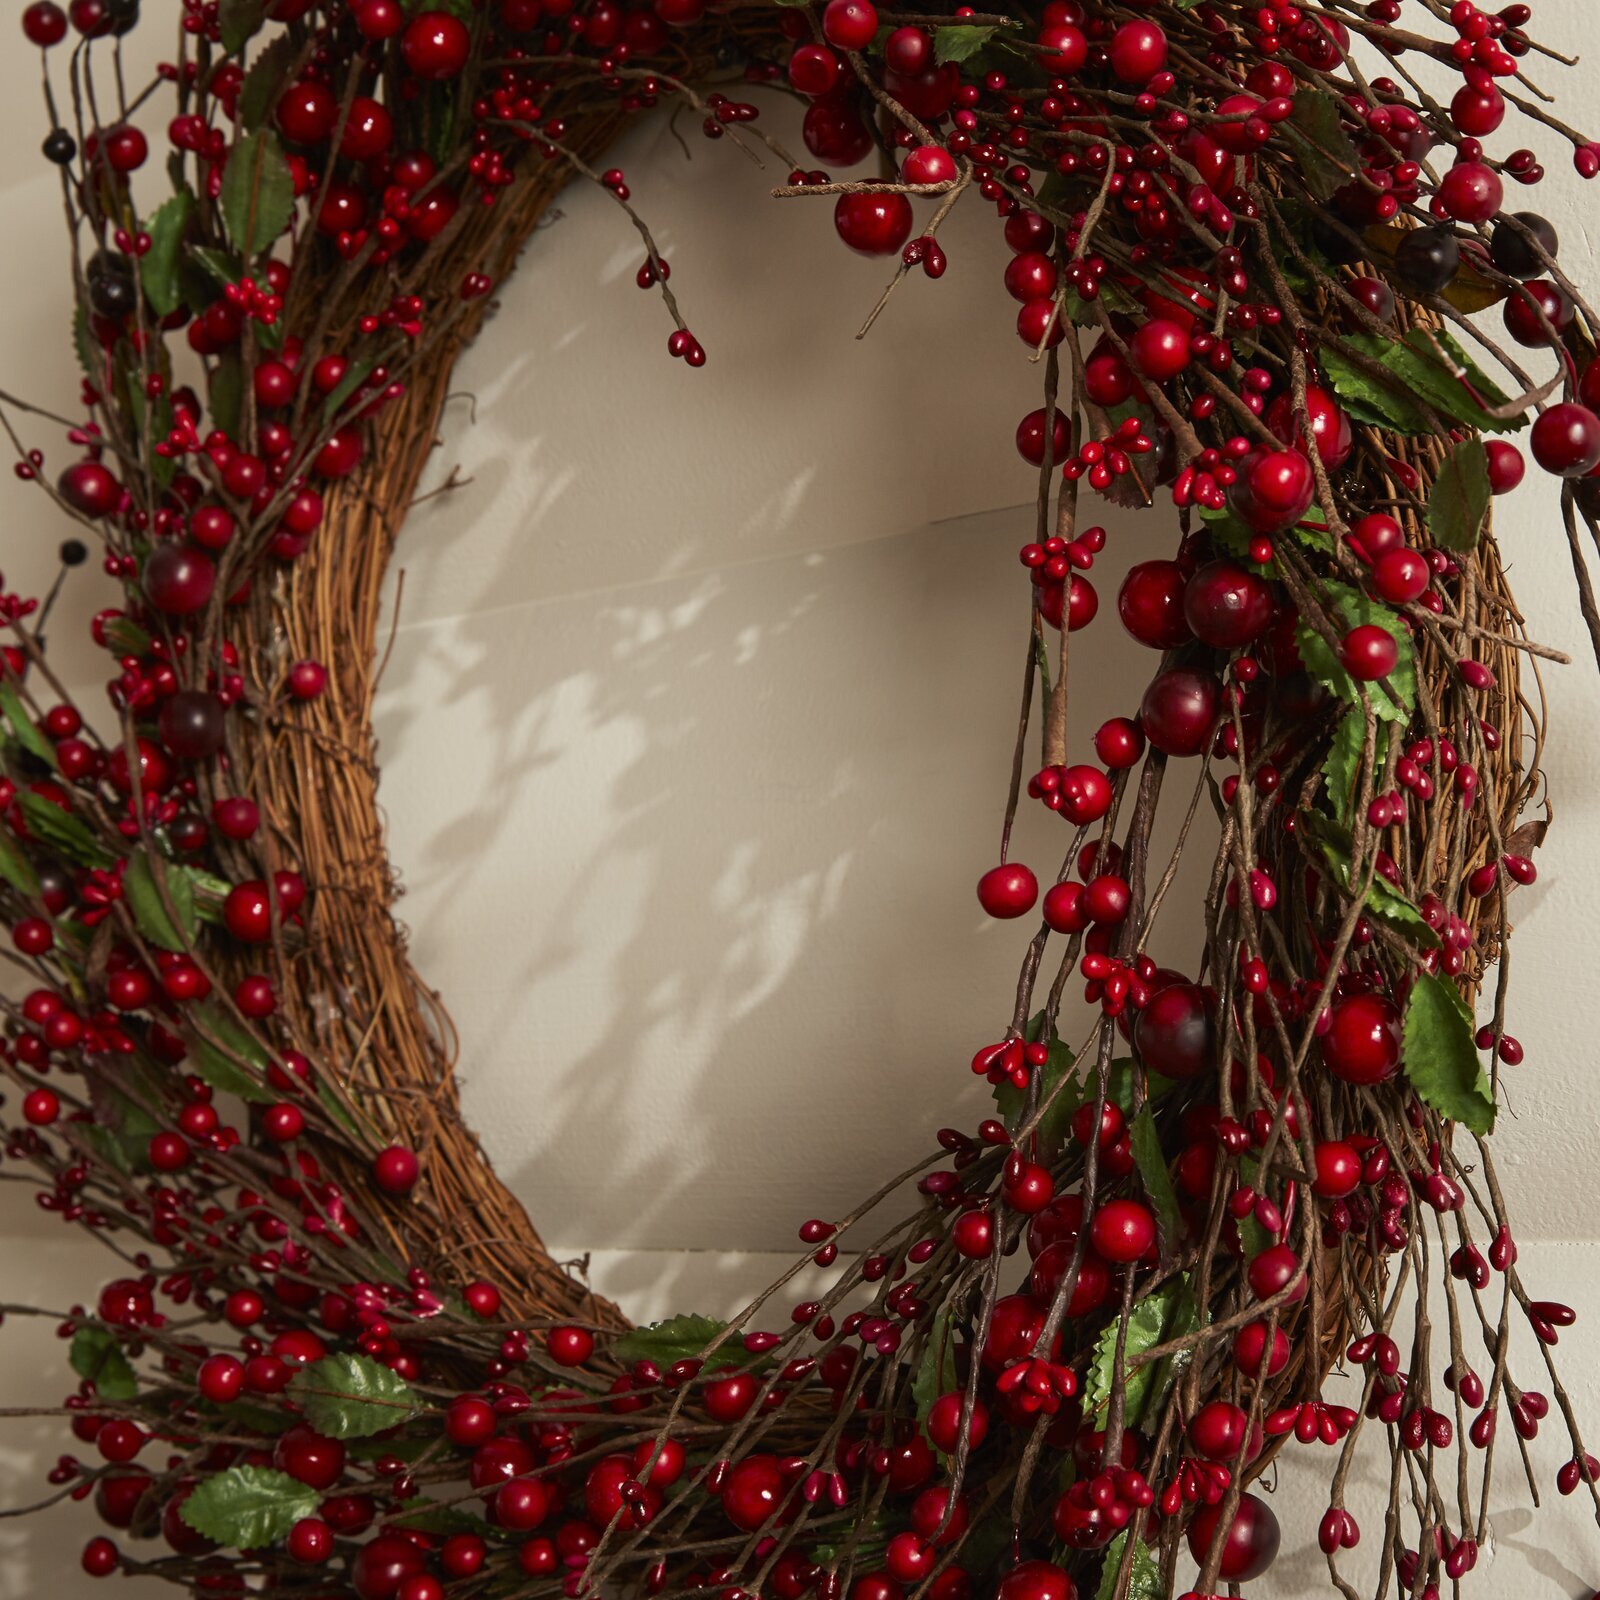 Berry beautiful wreaths for front door